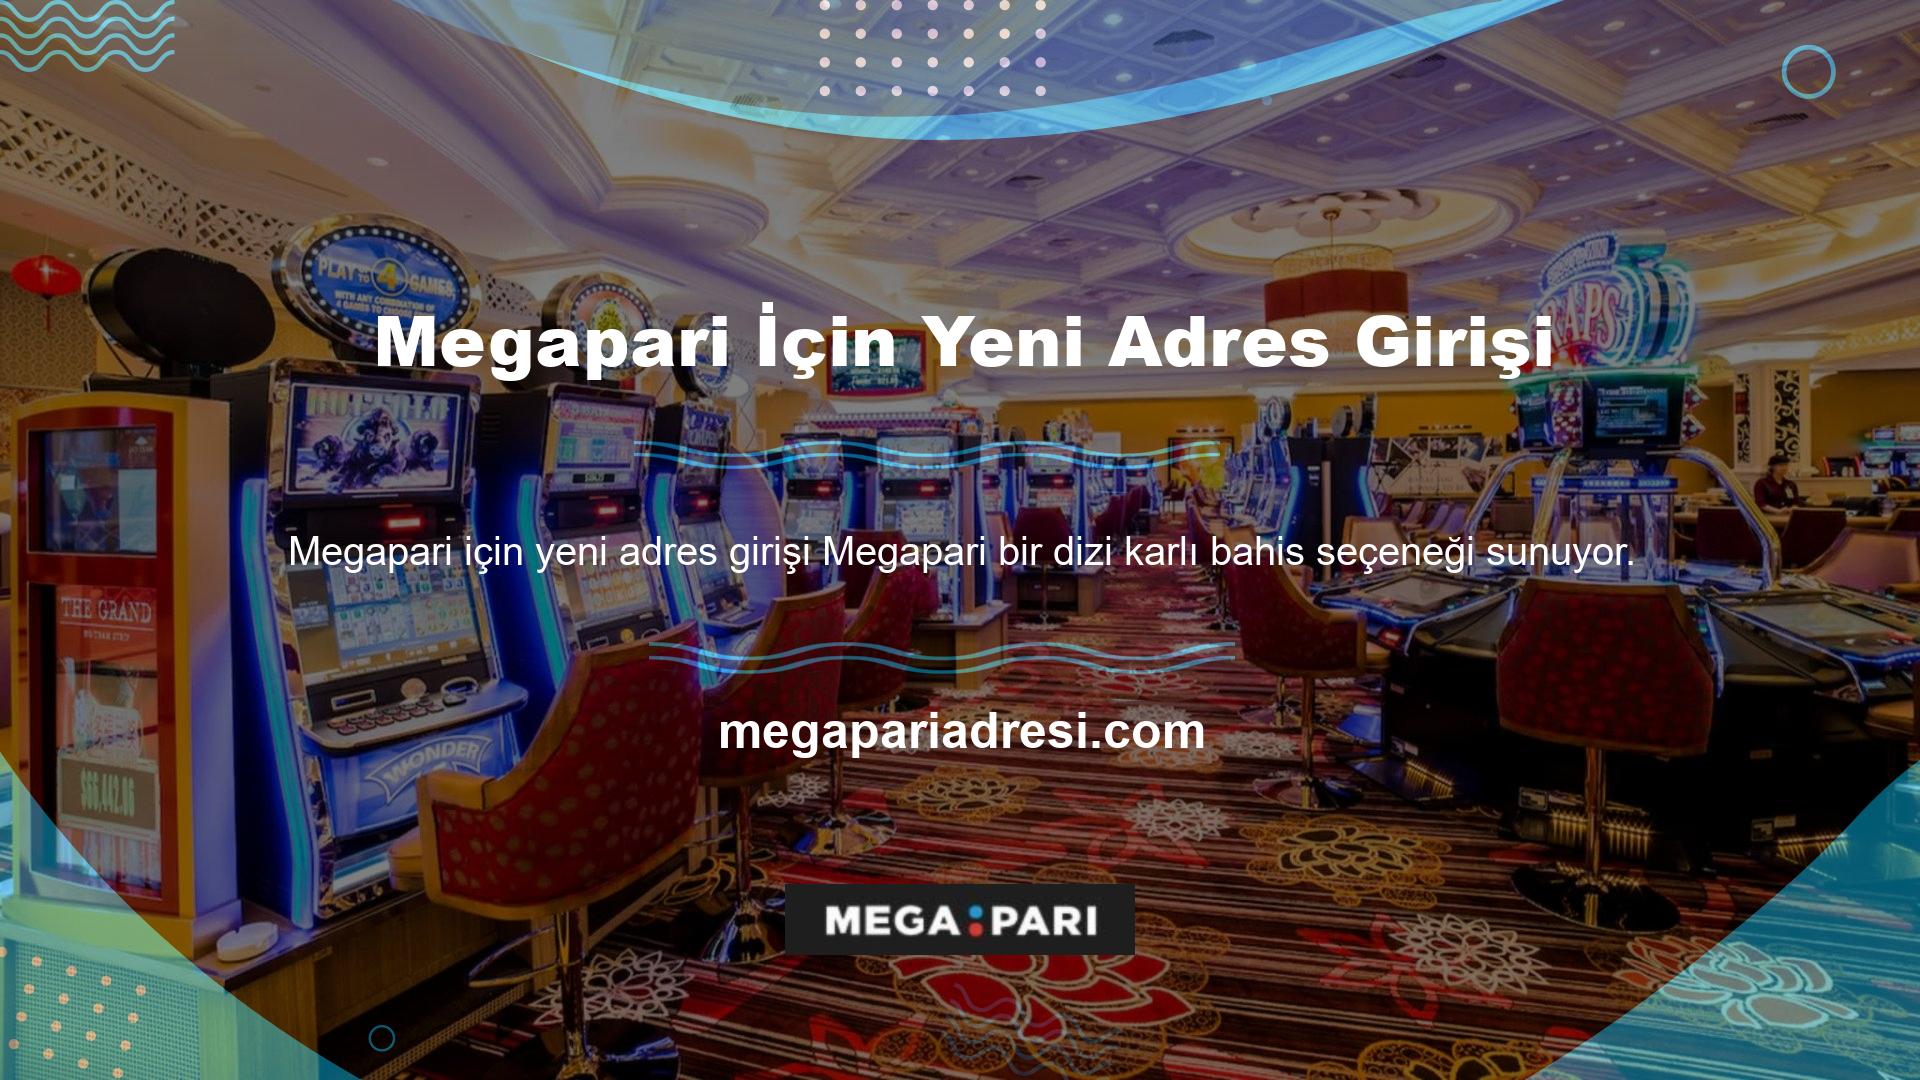 Özellikle Megapari yeni adresine girişi casino tutkunlarına bol miktarda para kazanma fırsatı sunuyor